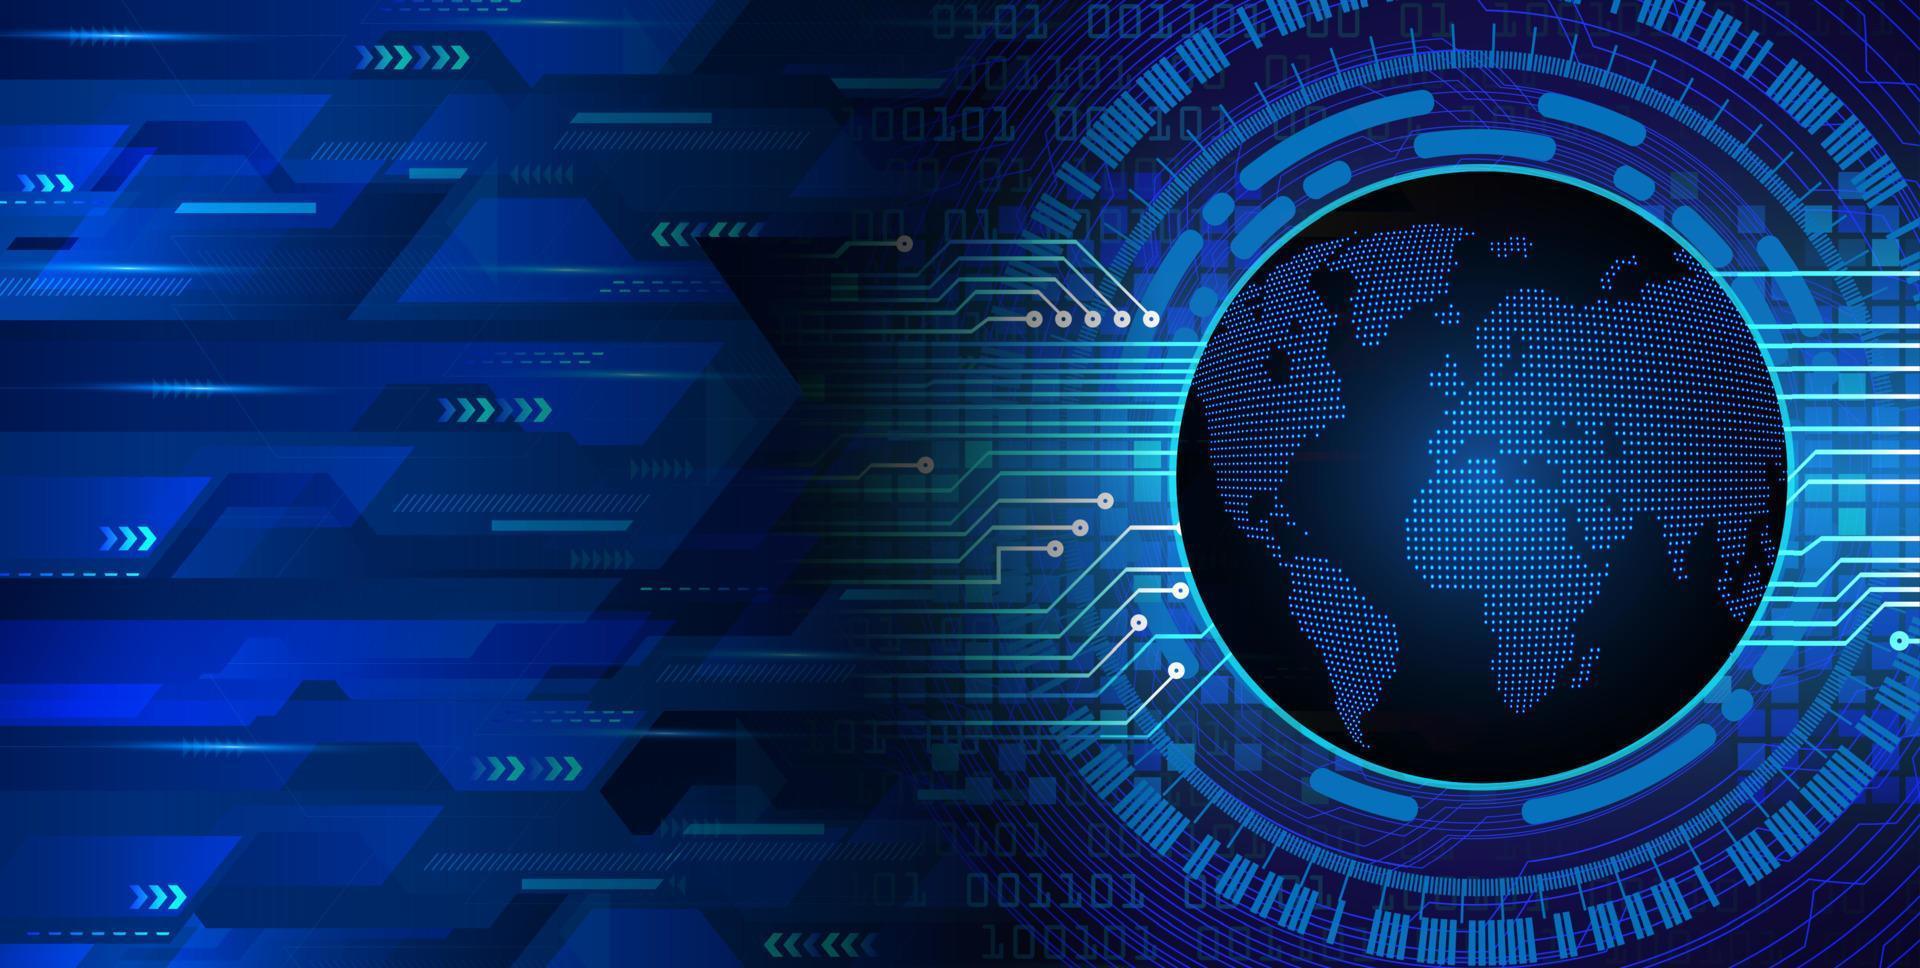 wereld binaire printplaat toekomstige technologie, blauwe hud cyber security concept achtergrond vector